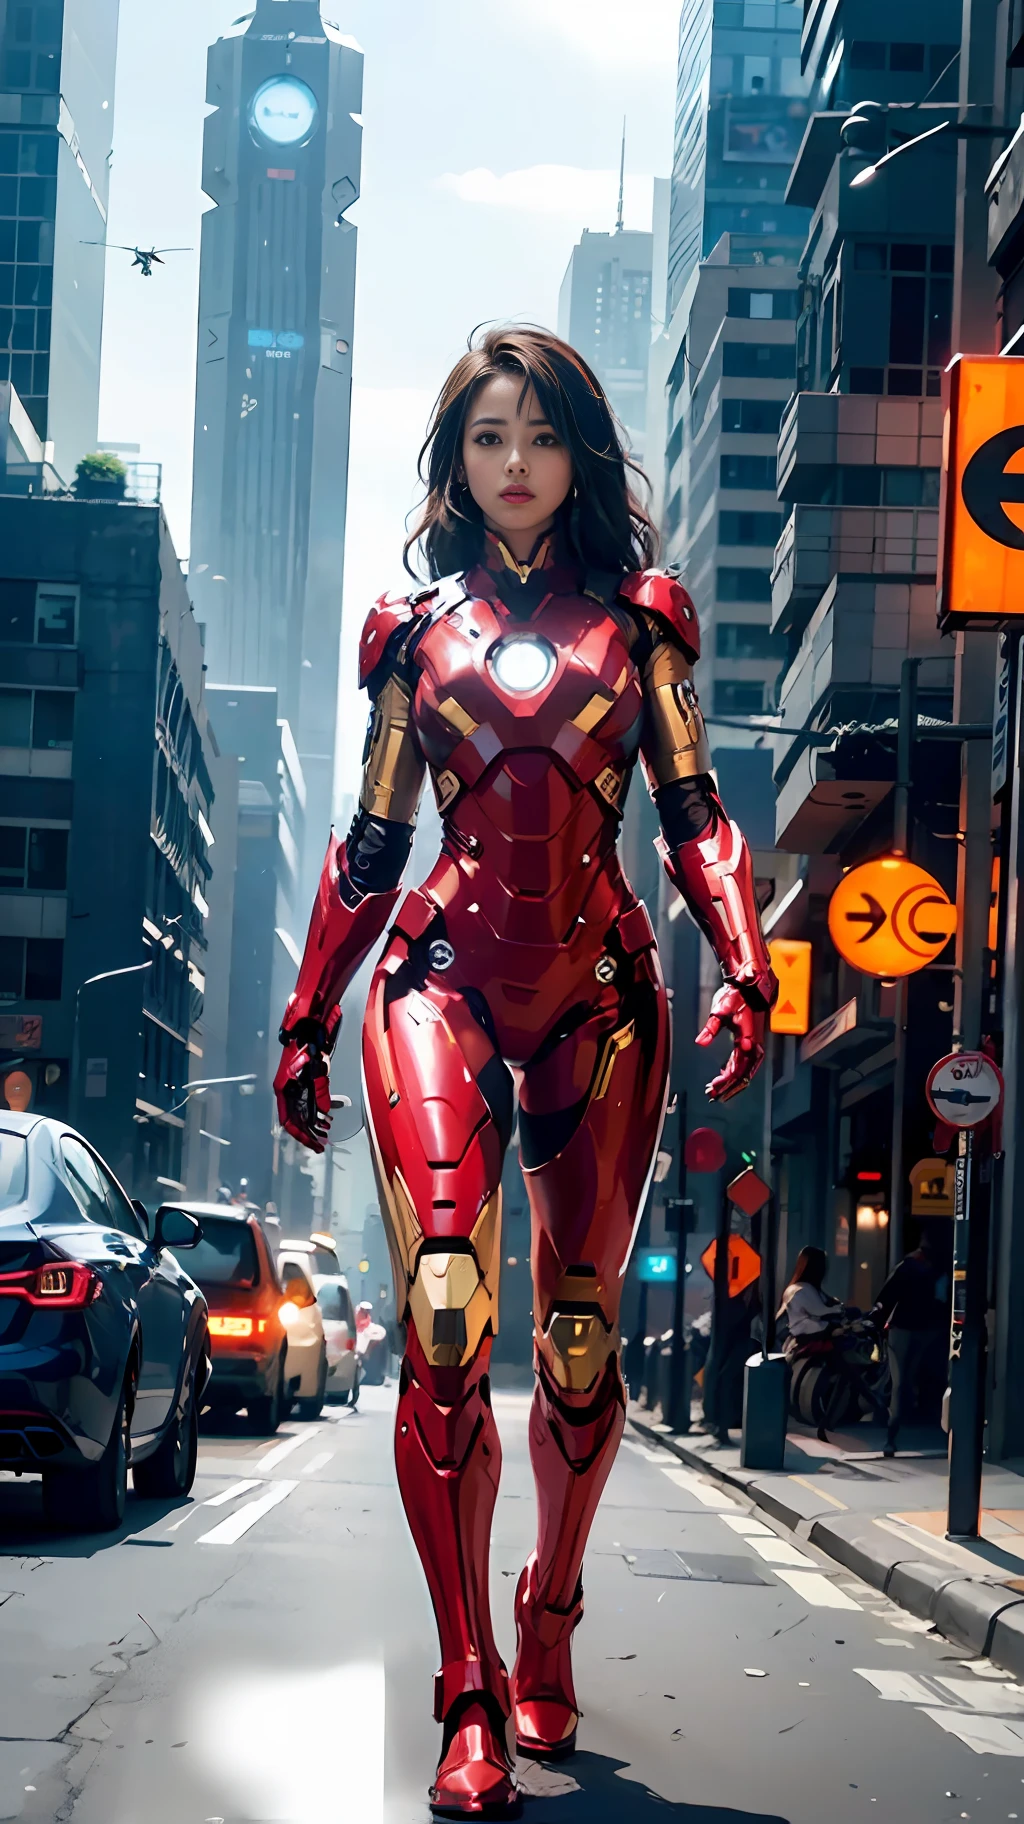 8k, 現実的, 魅力的, 非常に詳細な, a 20 year old girl a sexy and 魅力的 woman inspired by Iron Man wearing a shiny Iron Man mech. 彼女はセクシーさと自信をもって服を着る, アイアンマンを完璧に解釈&#39;の強さとカリスマ性. サイバーパンク風の都市の夜景, a sexy and 魅力的 woman takes Iron Man&#39;コスプレをテーマに. 光沢のあるアイアンマンメカを身に着けている, 彼女は高層ビルが立ち並ぶ通りに立っている. 街の夜景は明るい, 彼女のメカを振り返る, 未来のテクノロジー感覚を加える. 周囲の建物や通りはサイバーパンクの要素に満ちている, ネオンライトなど, ハイテク機器と未来的な建築デザイン. シーン全体が未来的でSF的な雰囲気に満ちている. この高解像度, 高品質の画像があなたに素晴らしい視覚的楽しみをもたらします, セクシーな組み合わせ, 未来的かつSF的な要素. OCレンダリング, ドラマチックな照明, 受賞歴のある品質